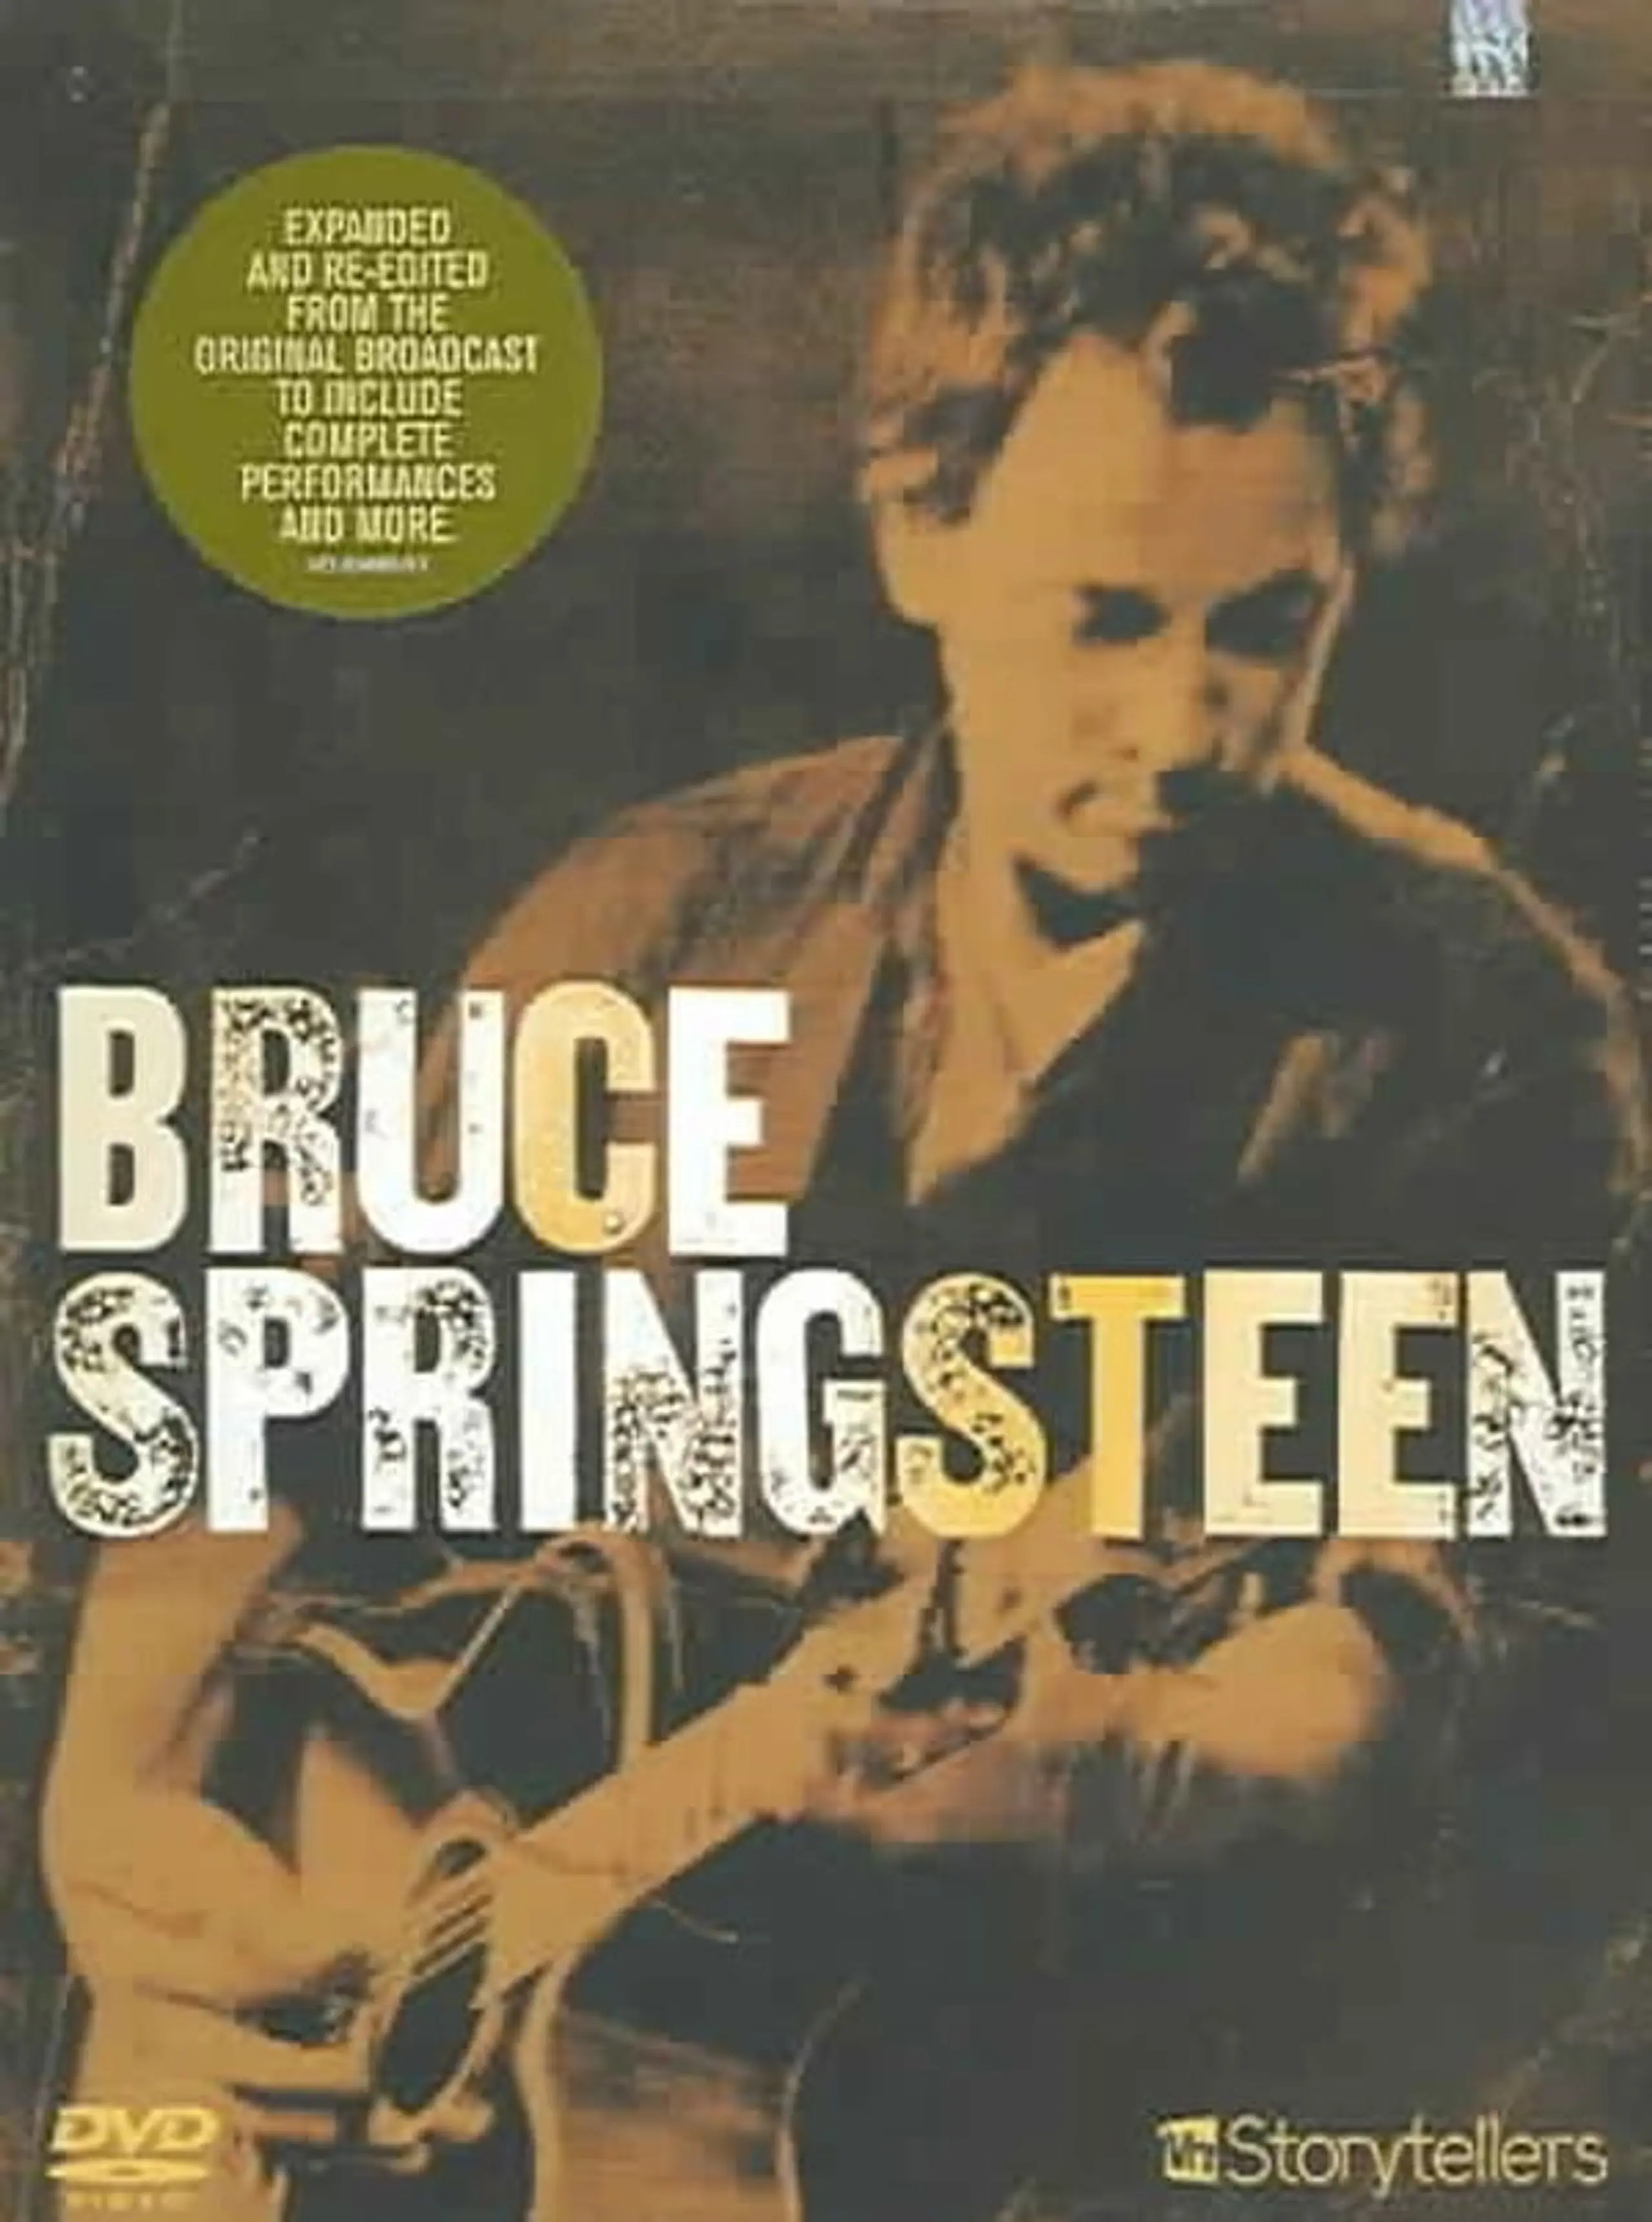 Bruce Springsteen: VH-1 Storytellers